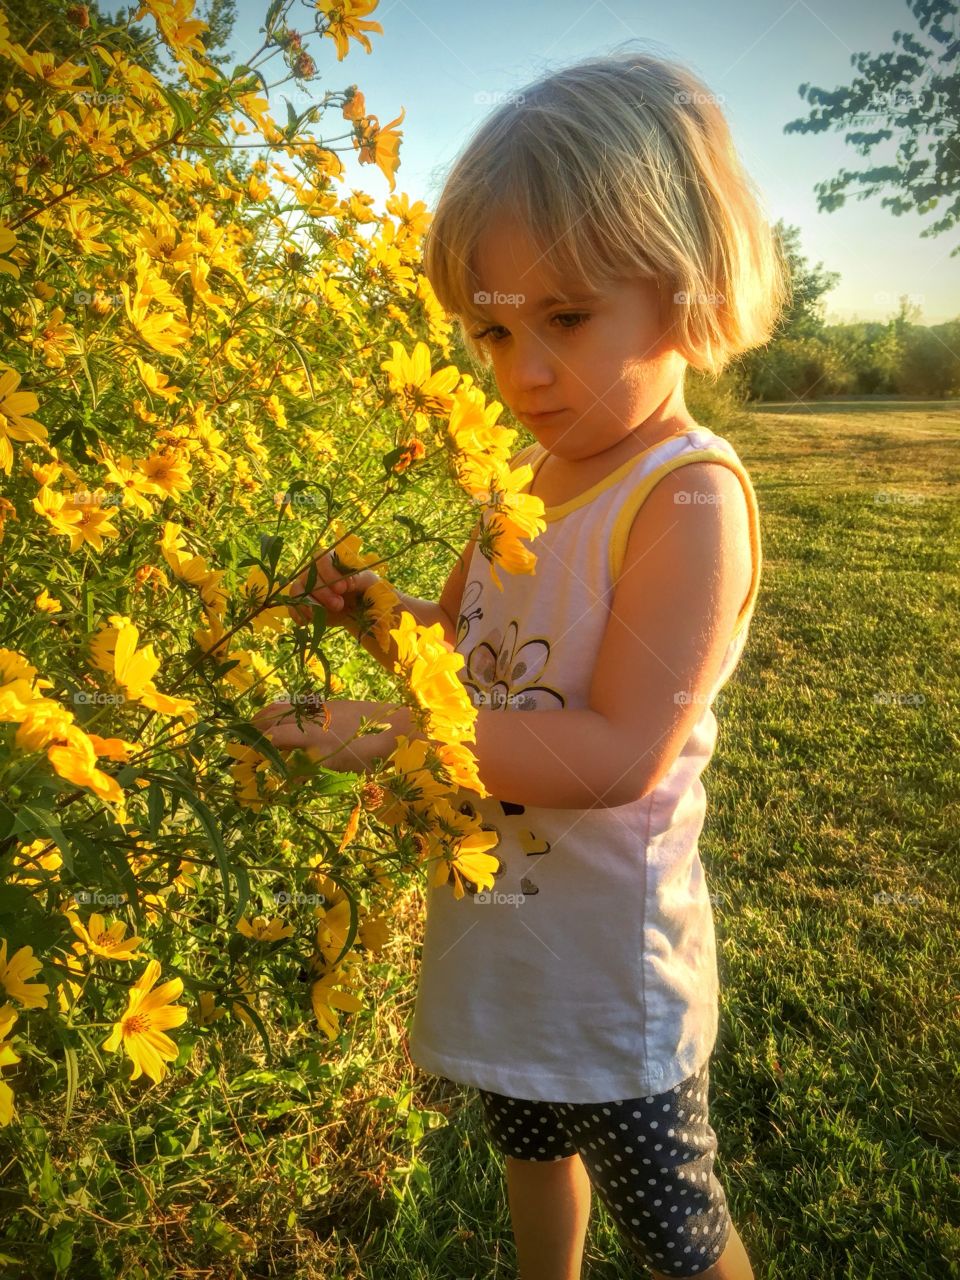 Flower explorer